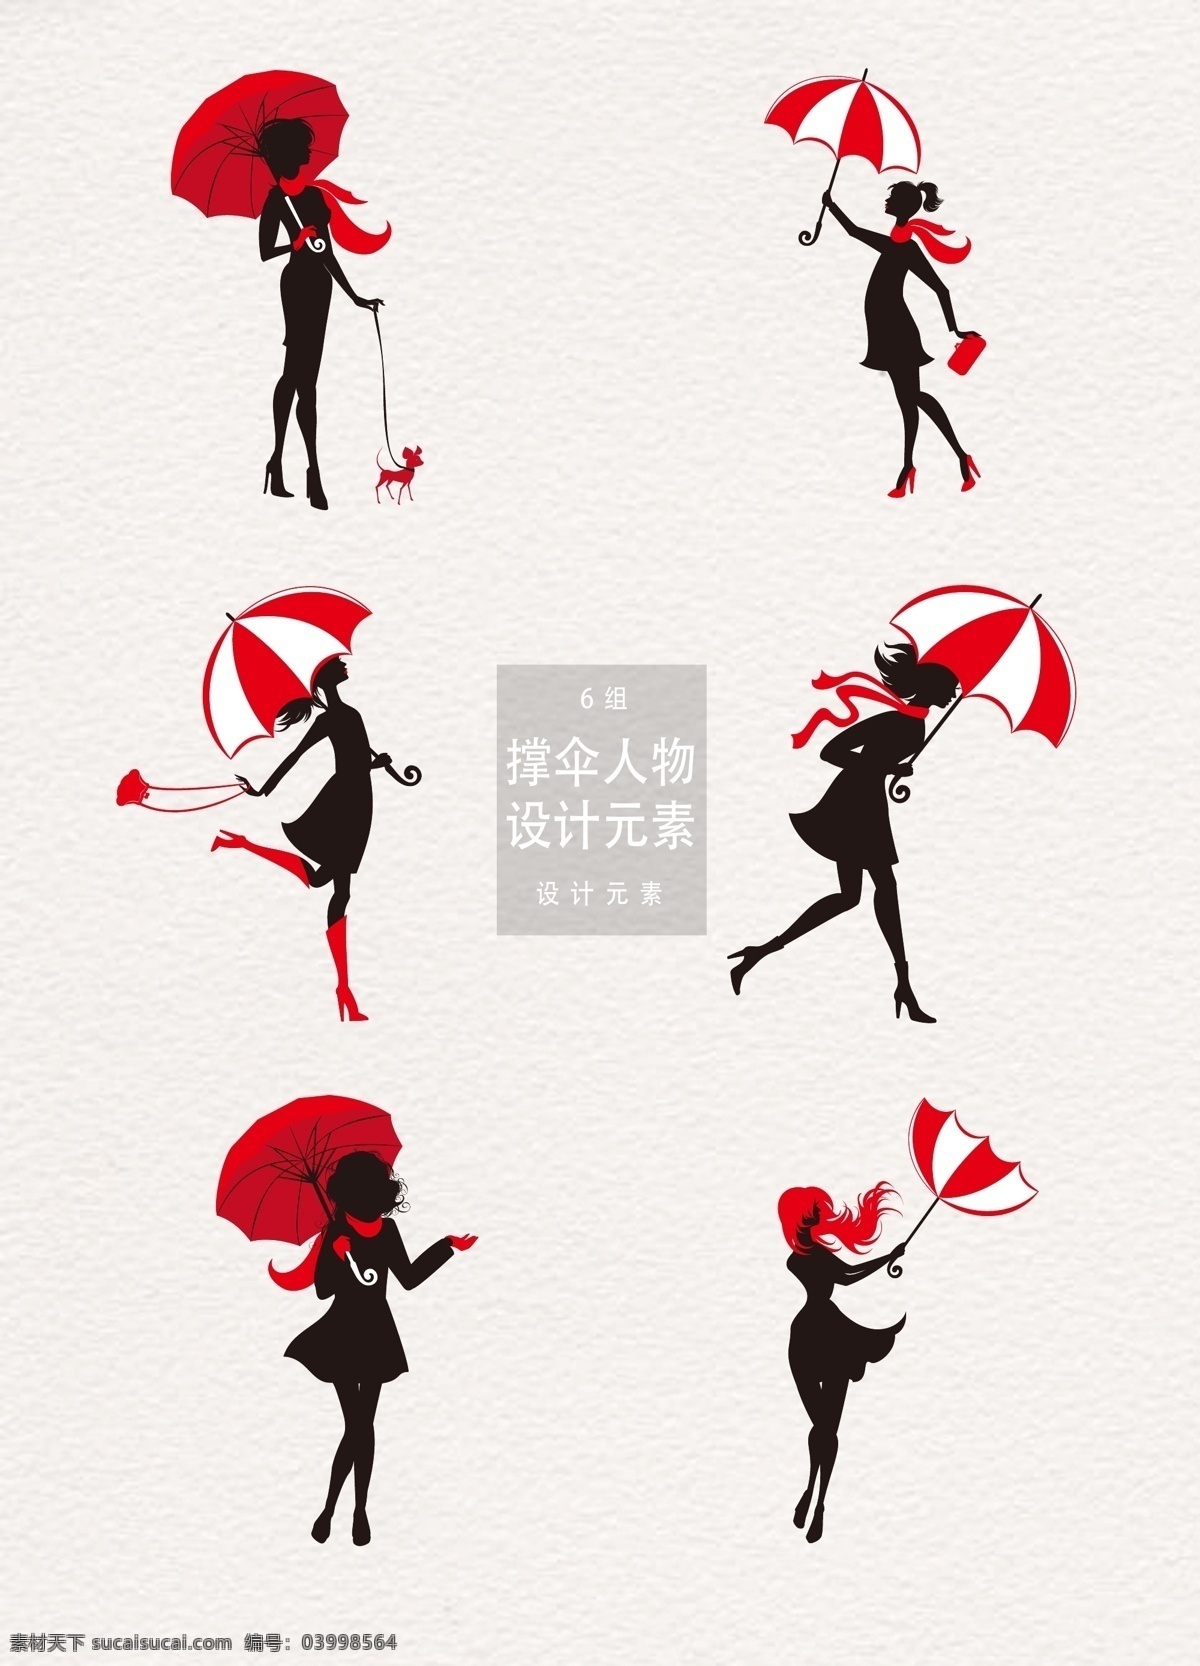 撑伞 人物 剪影 元素 人物剪影 设计元素 时尚元素 美女 撑伞人物 雨季 下雨